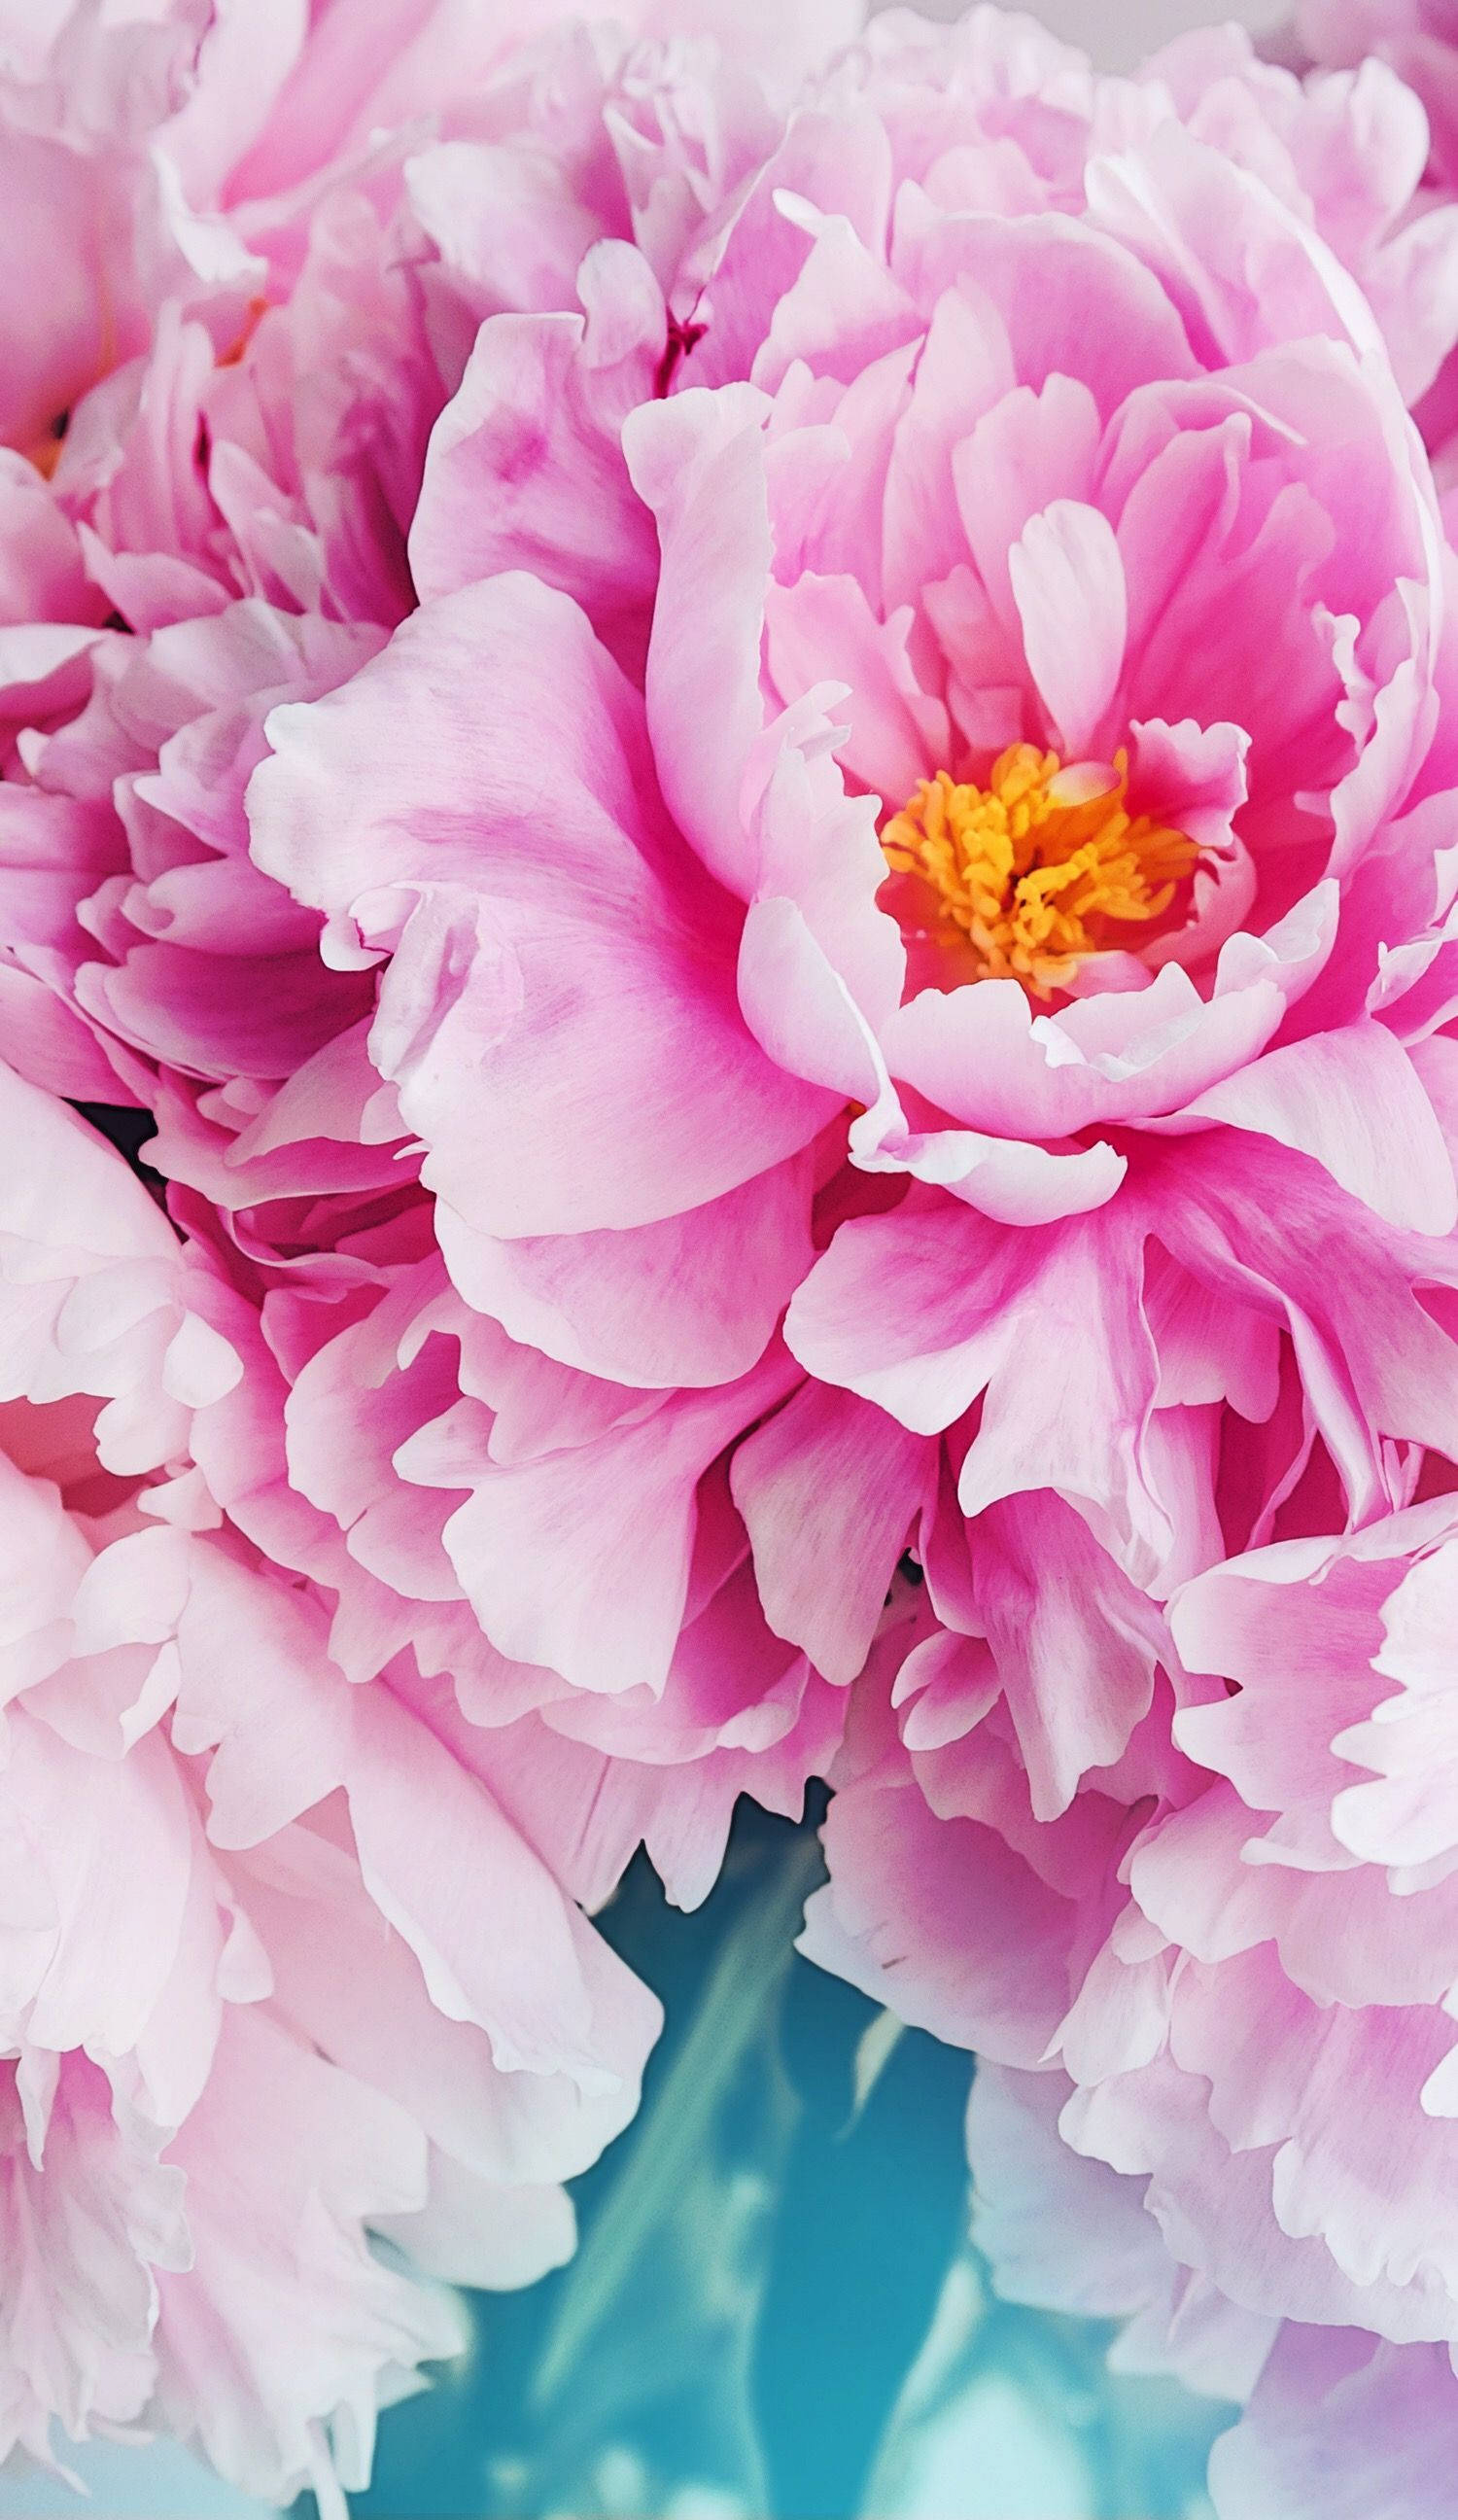 Download Pink Petals Floral Iphone Wallpaper | Wallpapers.com